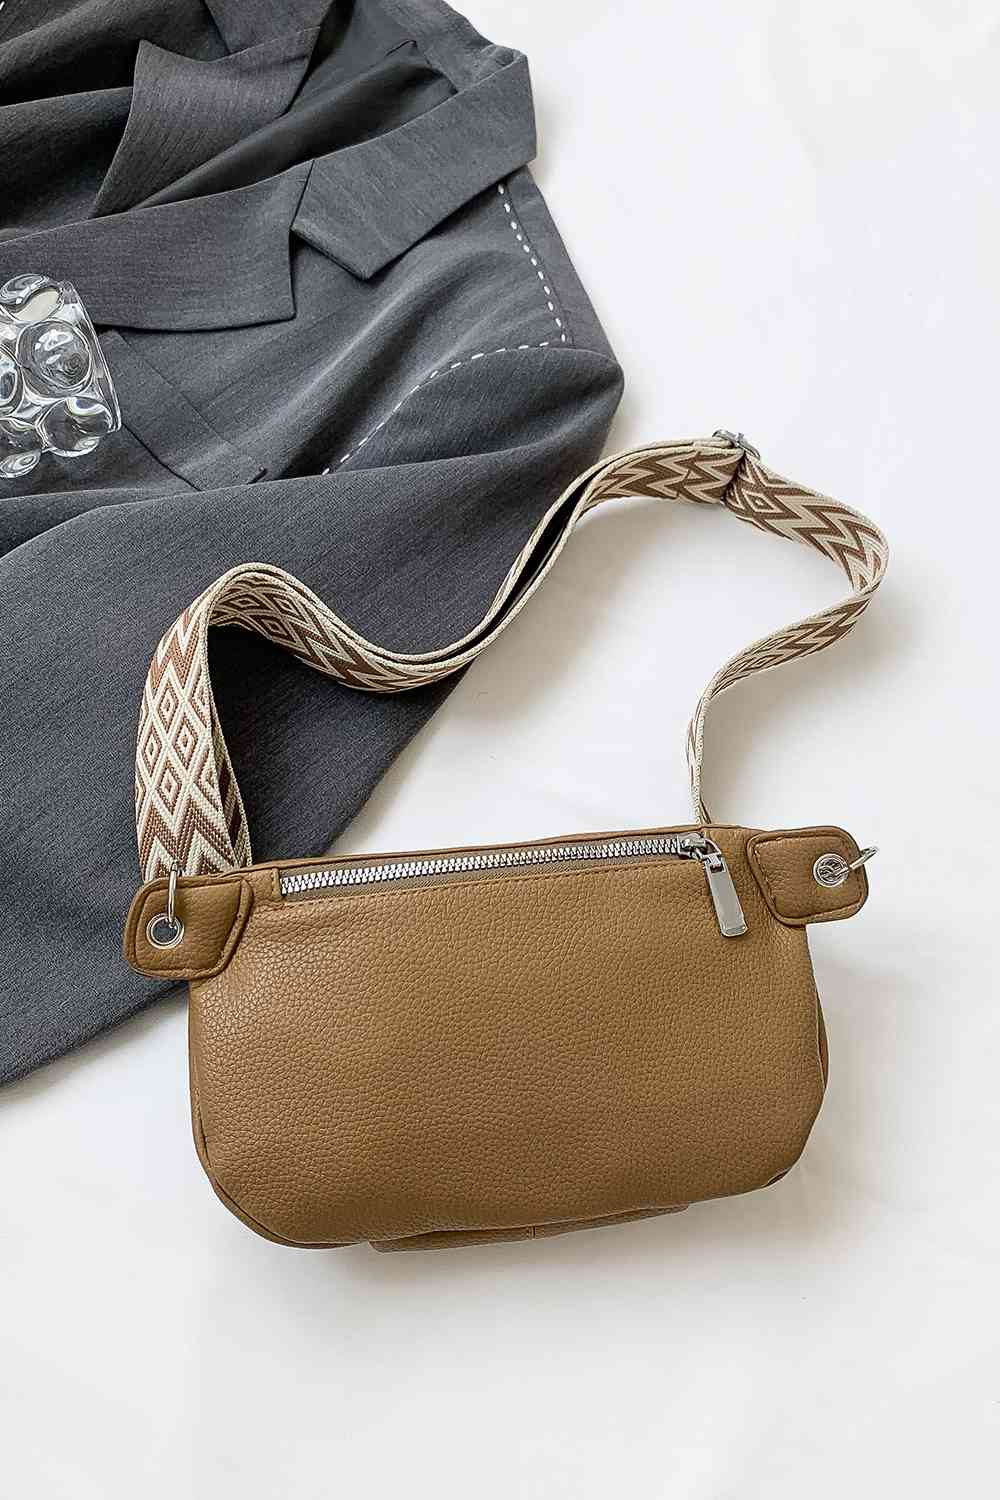 PU Leather Sling Bag - BloomBliss.com